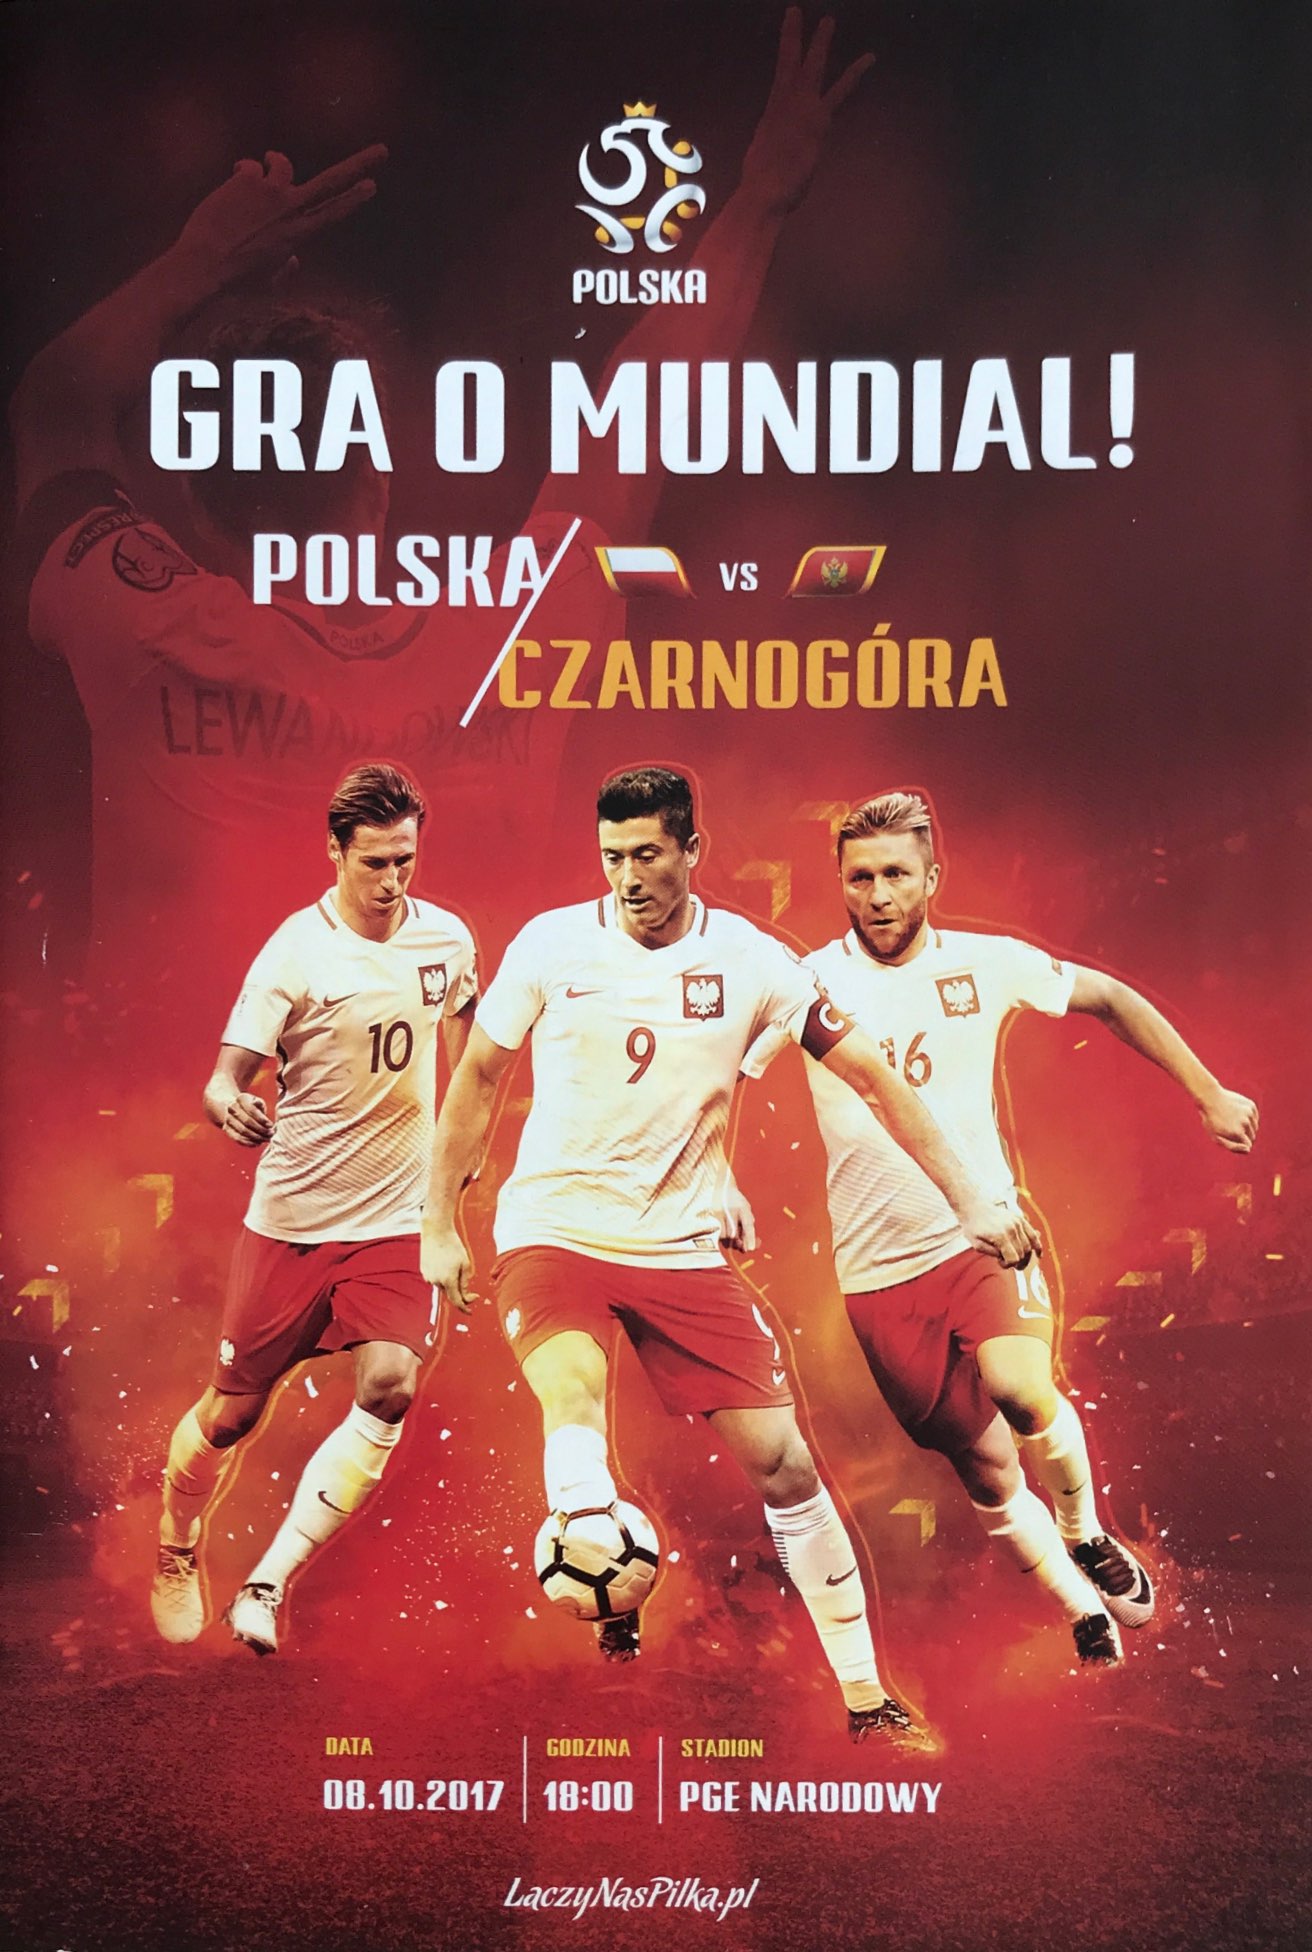 Program meczowy Polska - Czarnogóra 4:2 (08.10.2017).